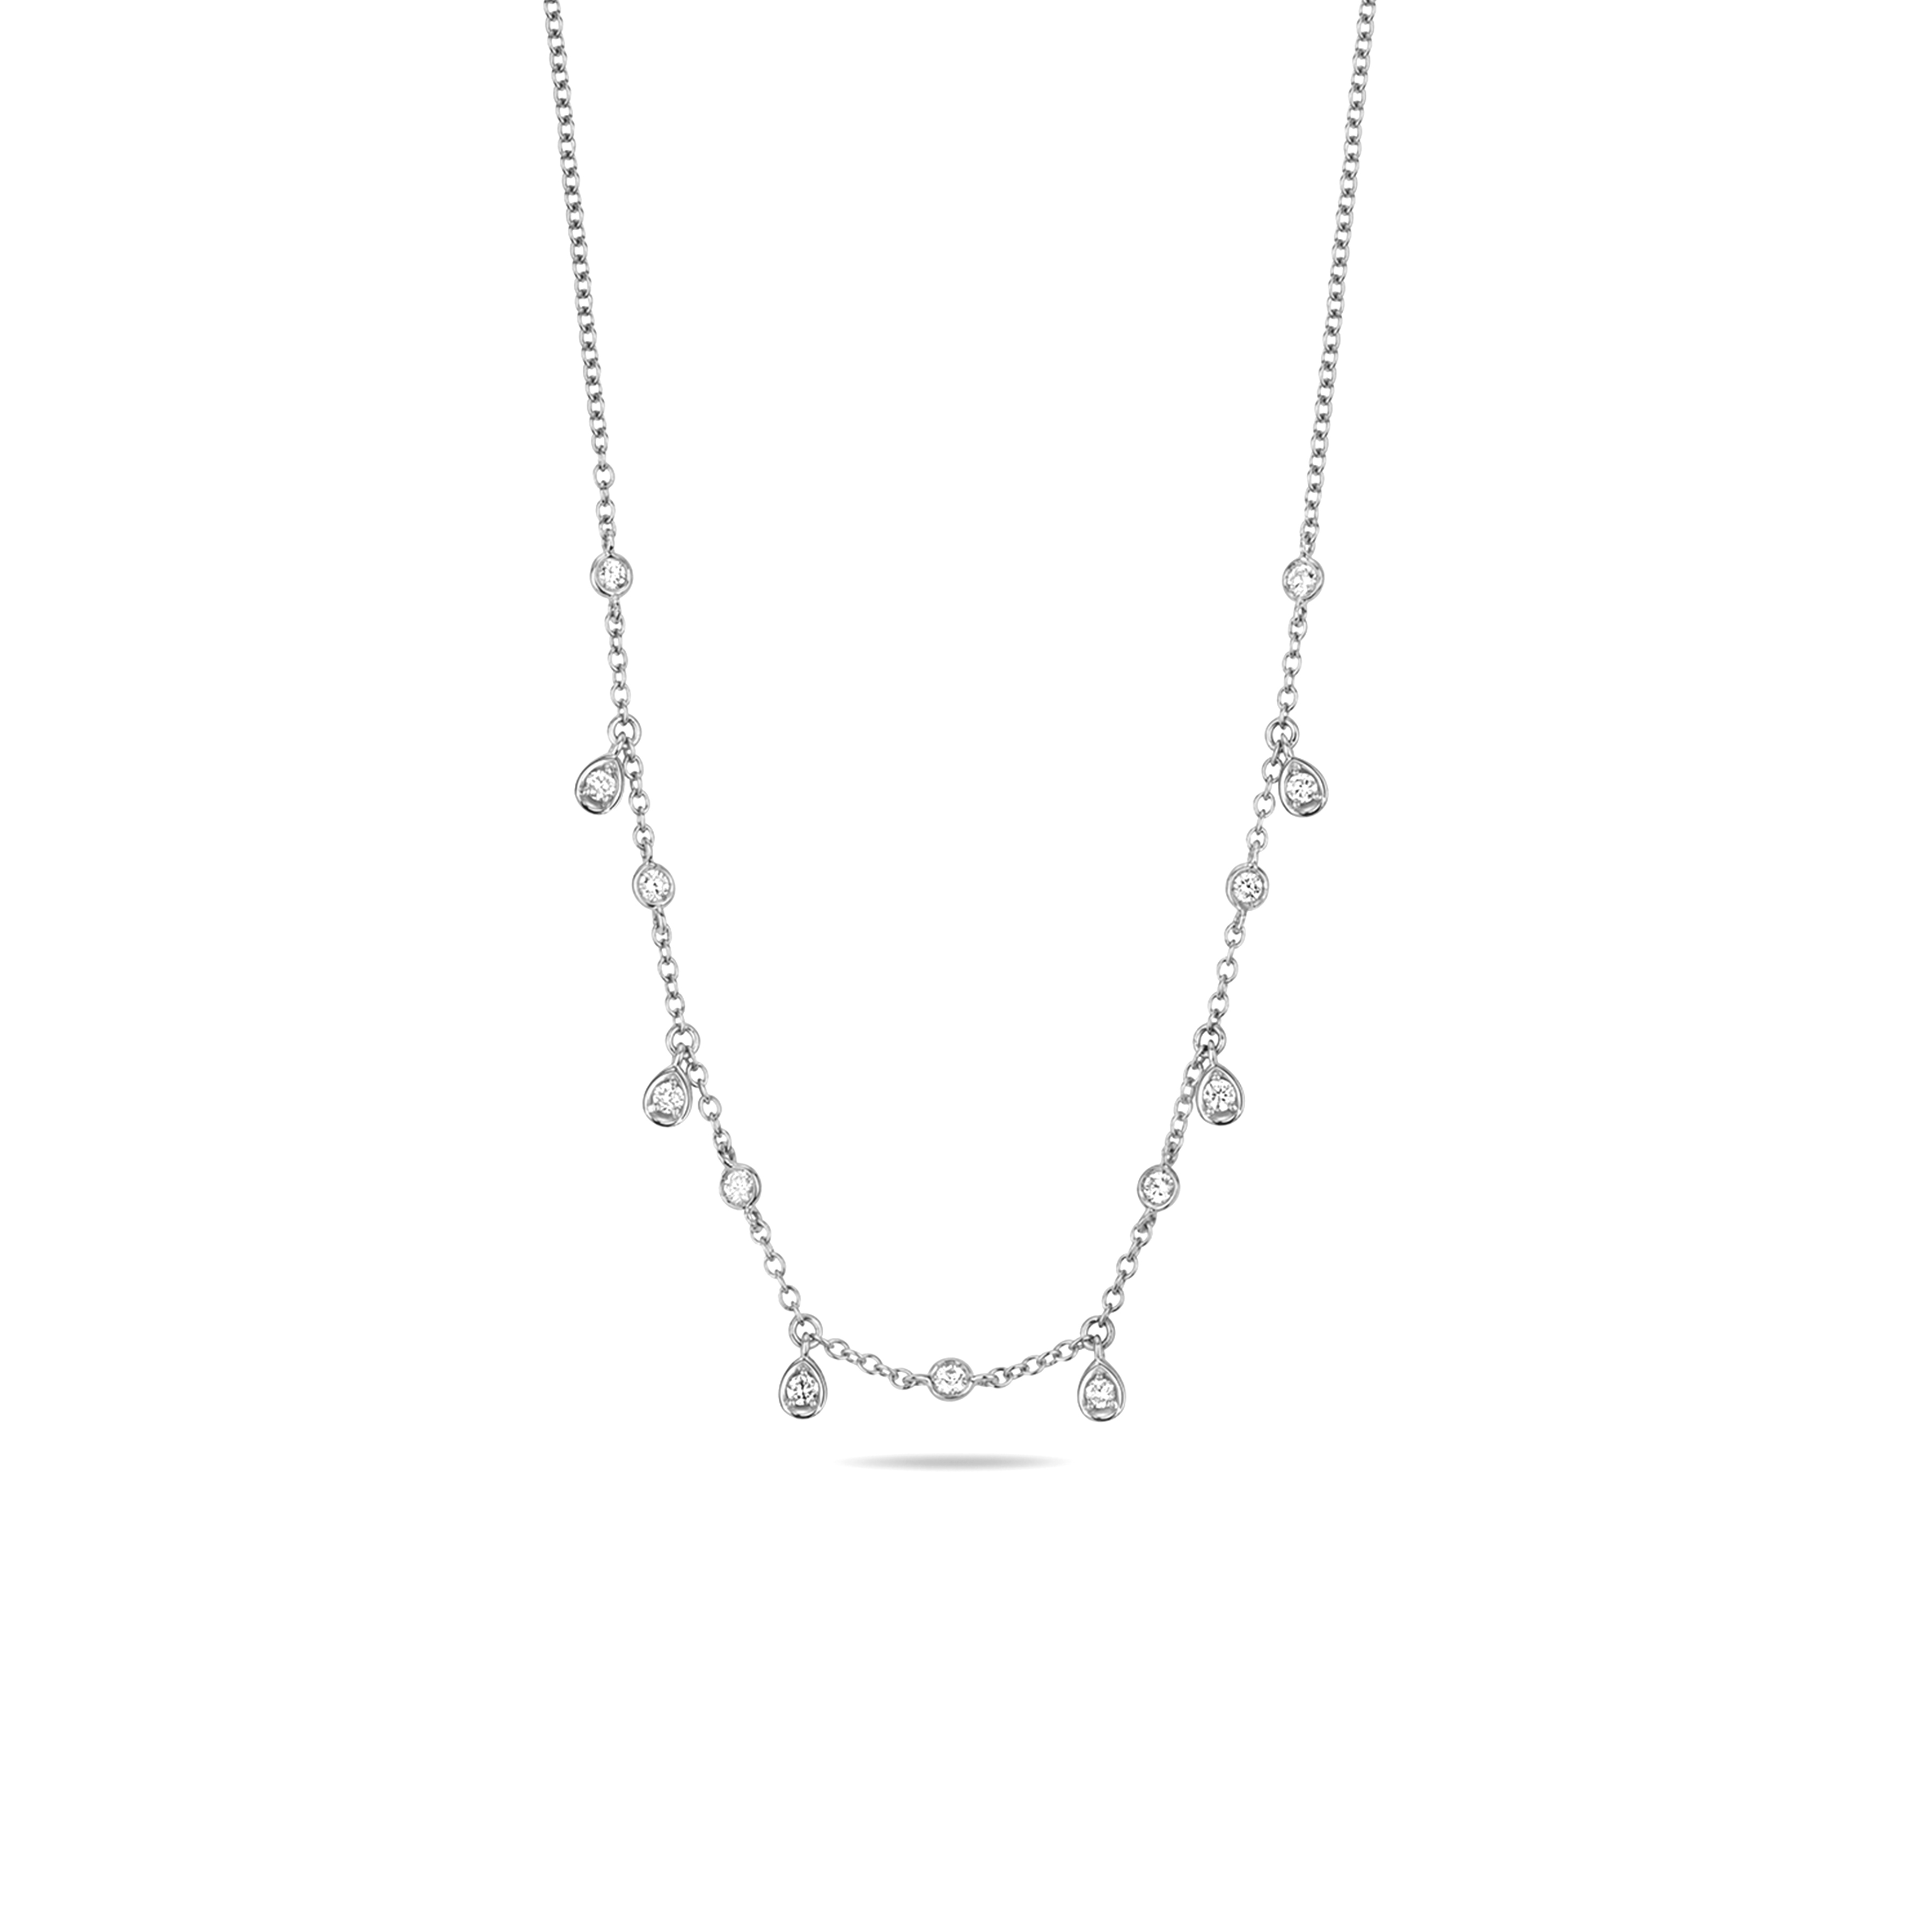 Buy Pave Setting Pear Shaped Round Diamond Necklace - Abelini